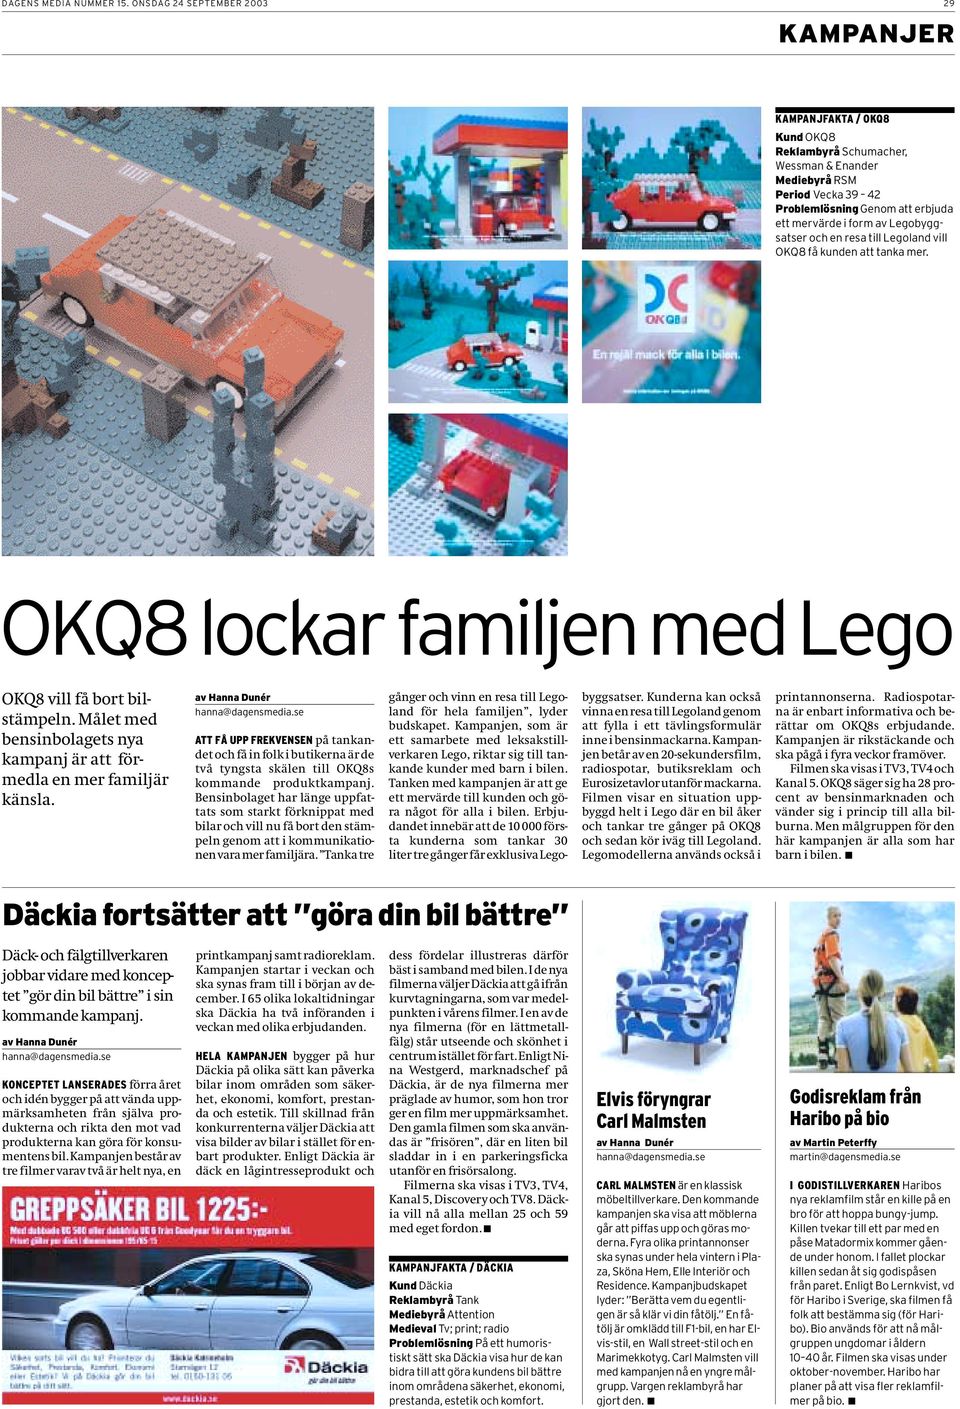 Legobyggsatser och en resa till Legoland vill OKQ8 få kunden att tanka mer. OKQ8 lockar familjen med Lego OKQ8 vill få bort bilstämpeln.